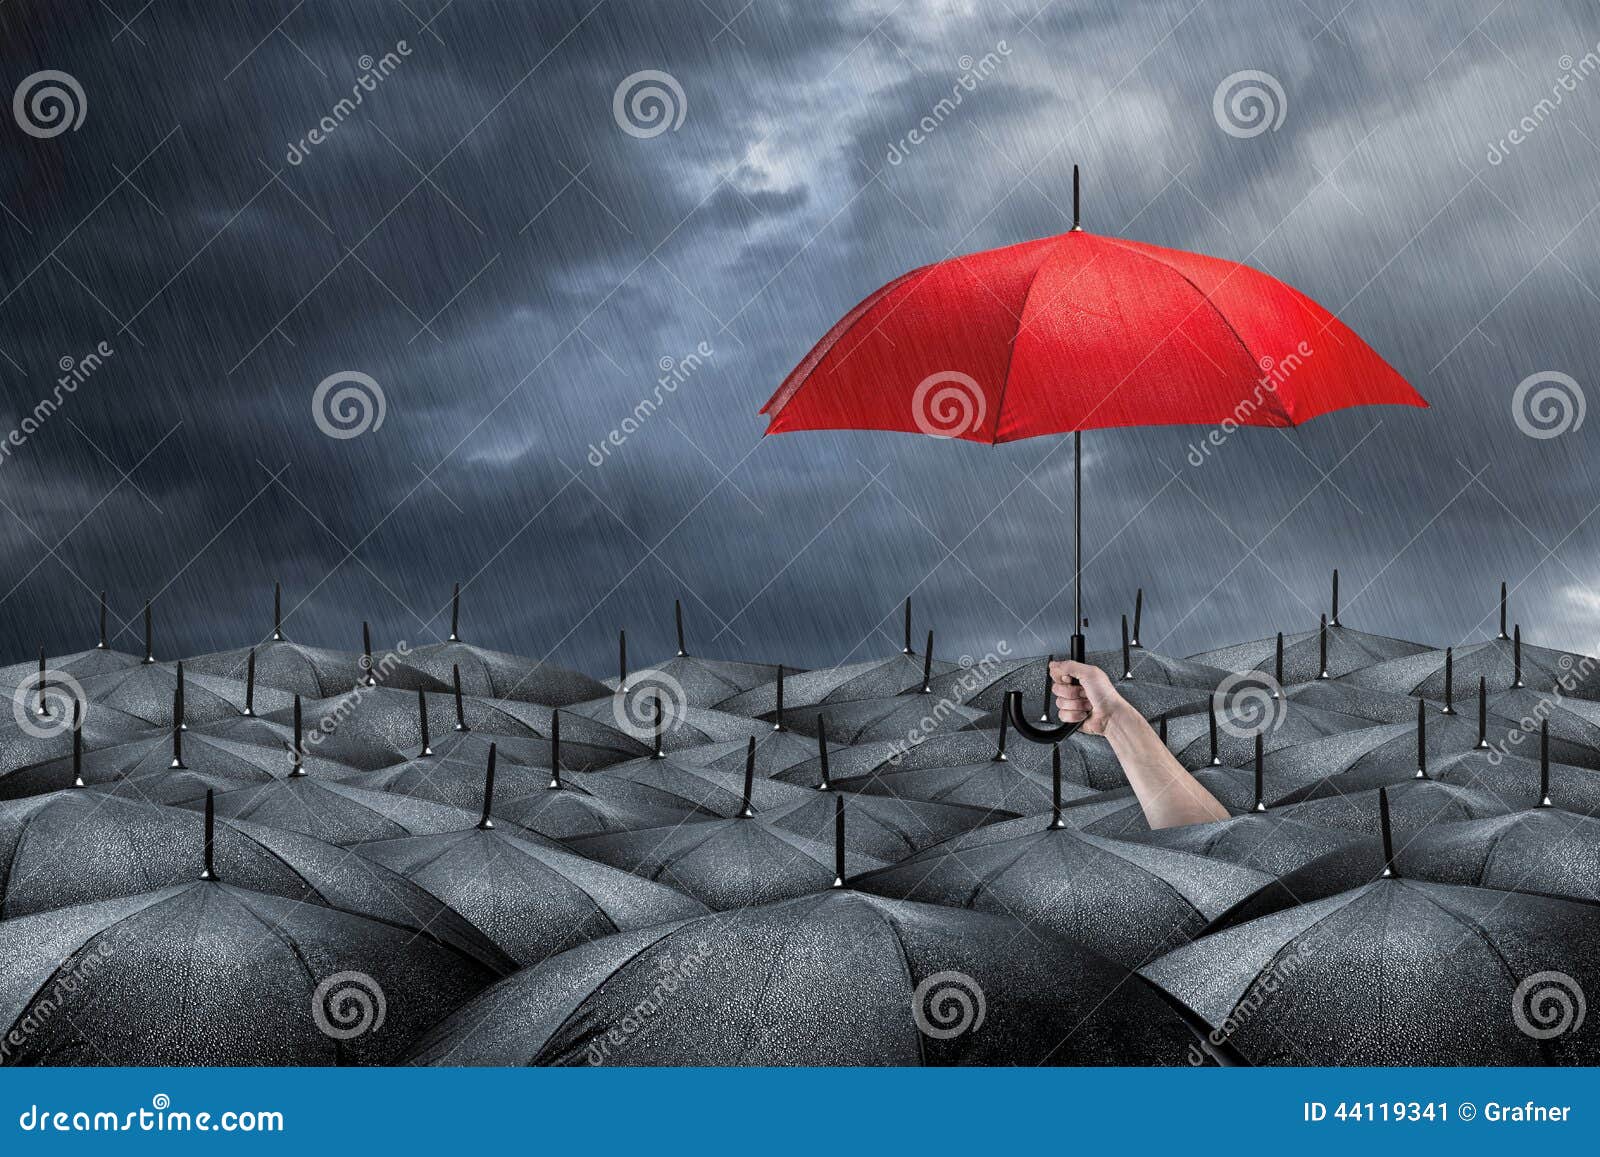 red umbrella concept